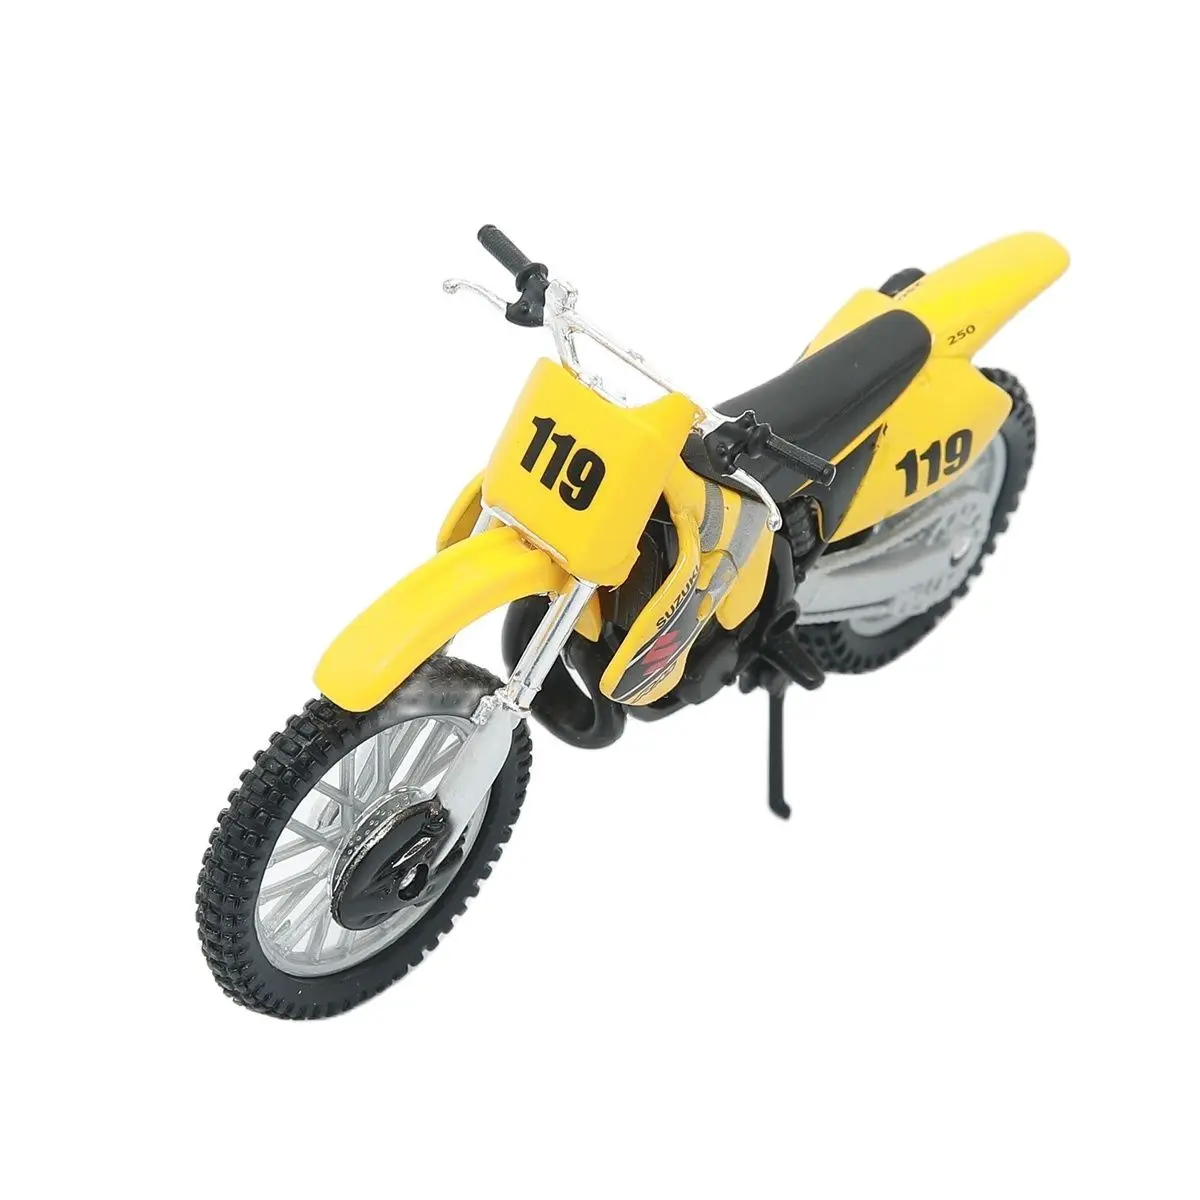 Modelo de motocicleta 1:18 Suzuki RM 250 amarillo de maisto 